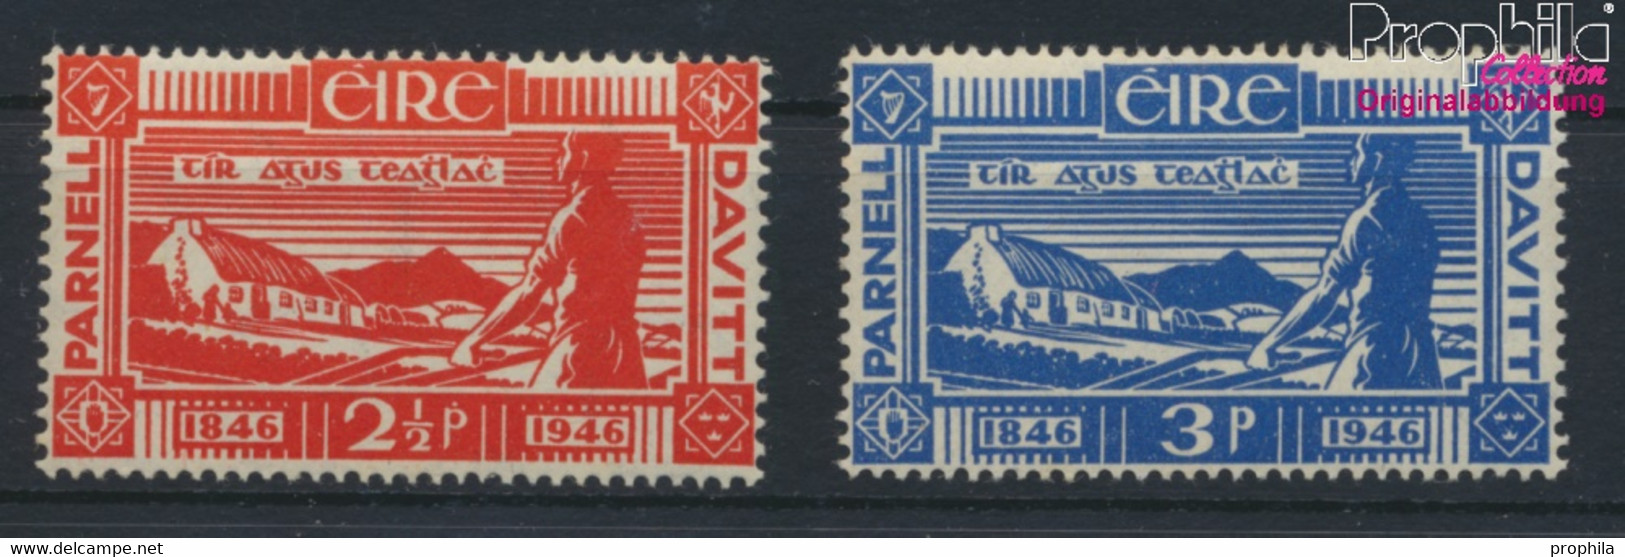 Irland Postfrisch Landreformer 1946 Landreformer  (9923267 - Unused Stamps